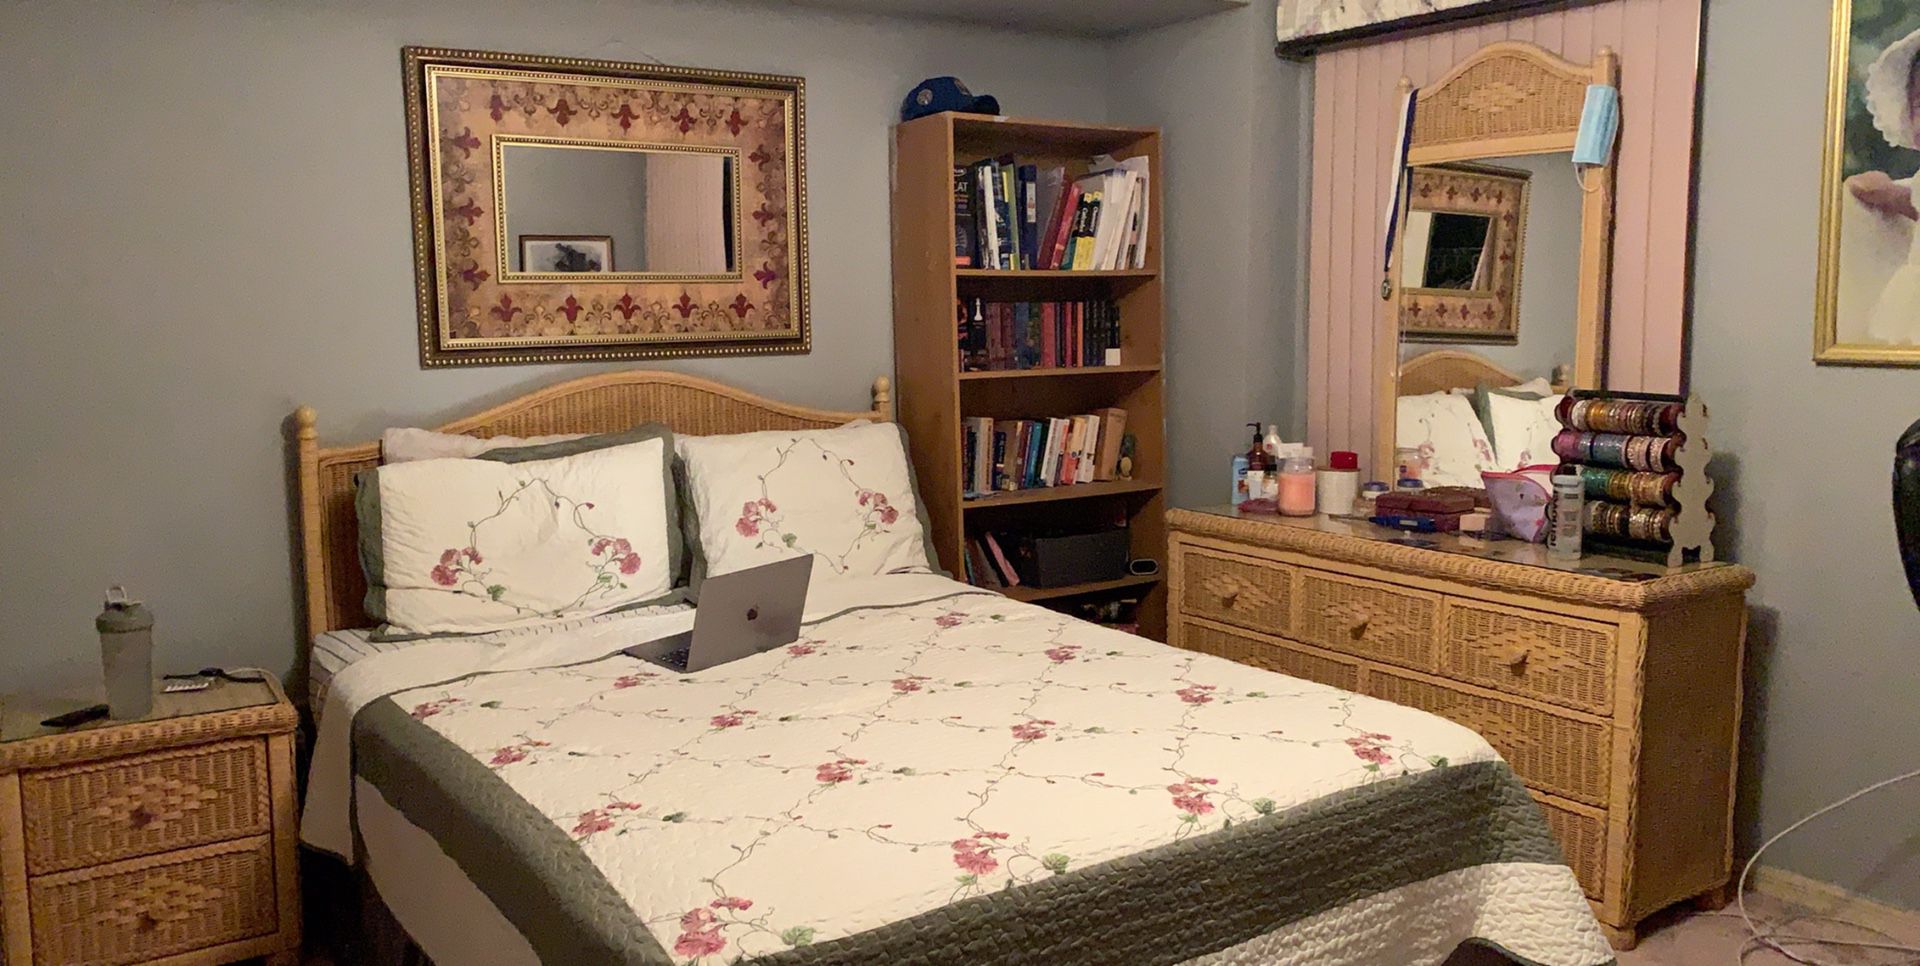 Queen bedroom set